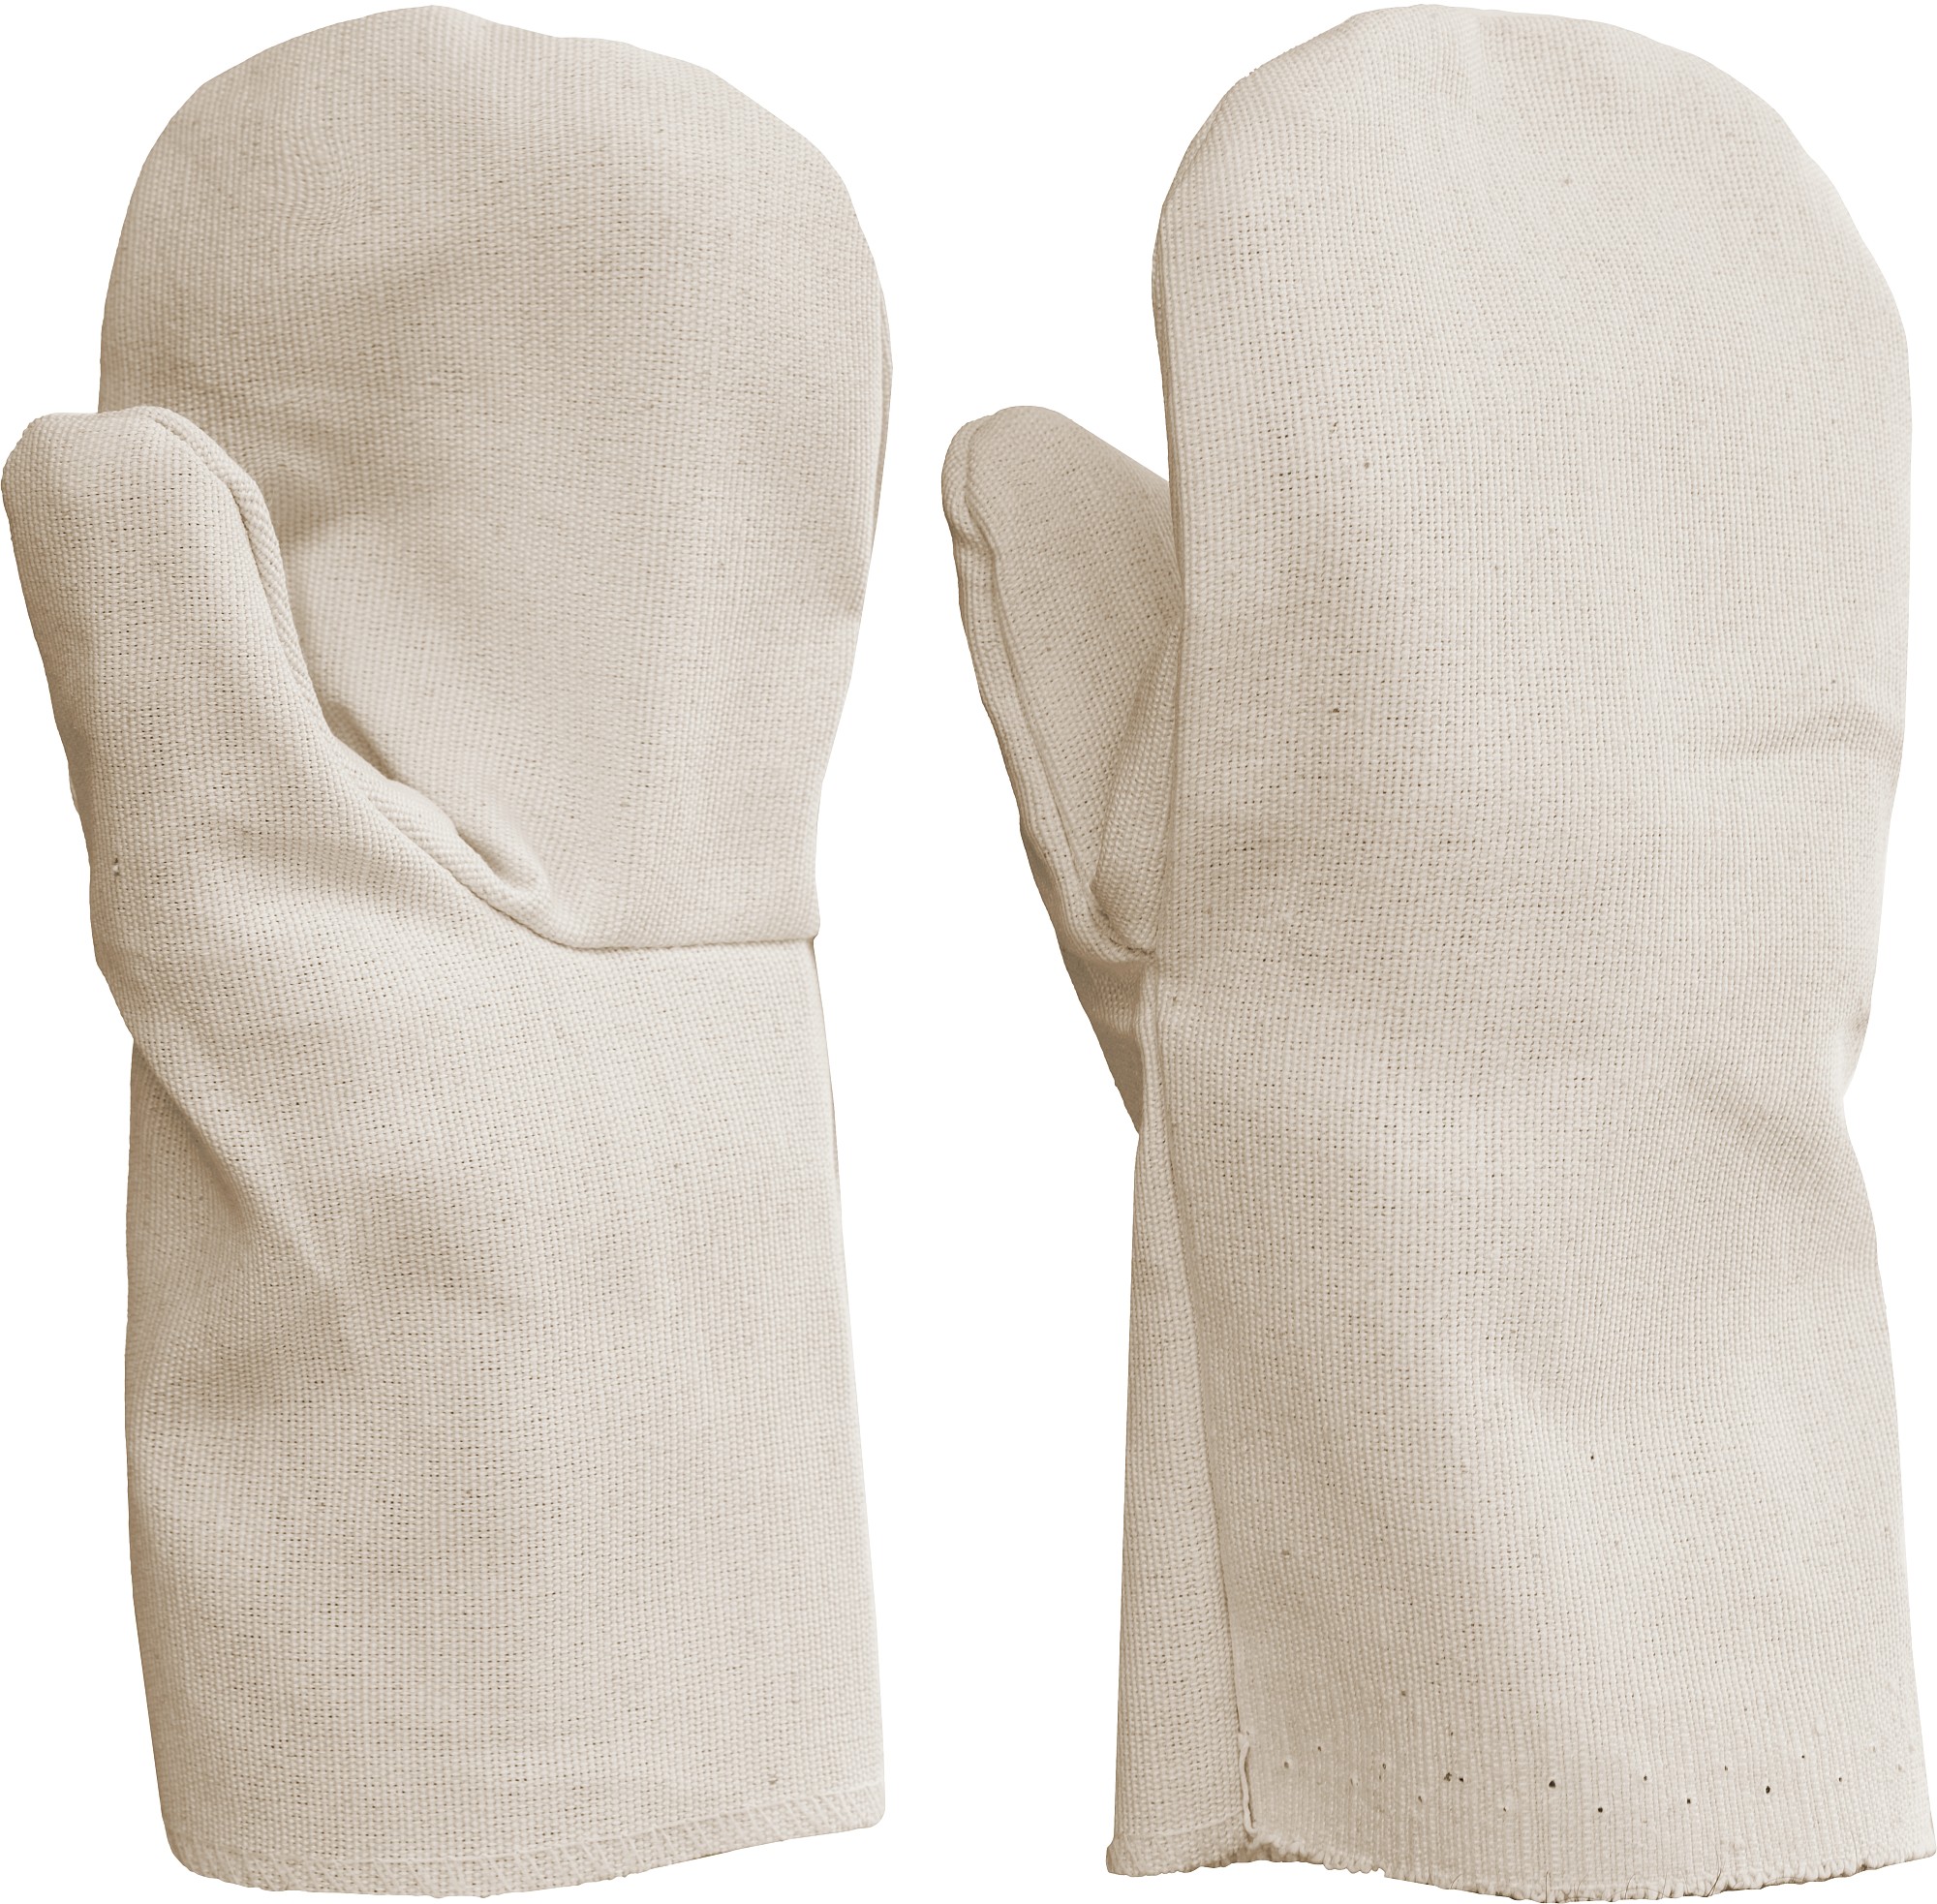 СИБИН XL, от мех. воздействий, двунитка с защитой от скольжения ПВХ, хлопчатобумажные рукавицы (11413)